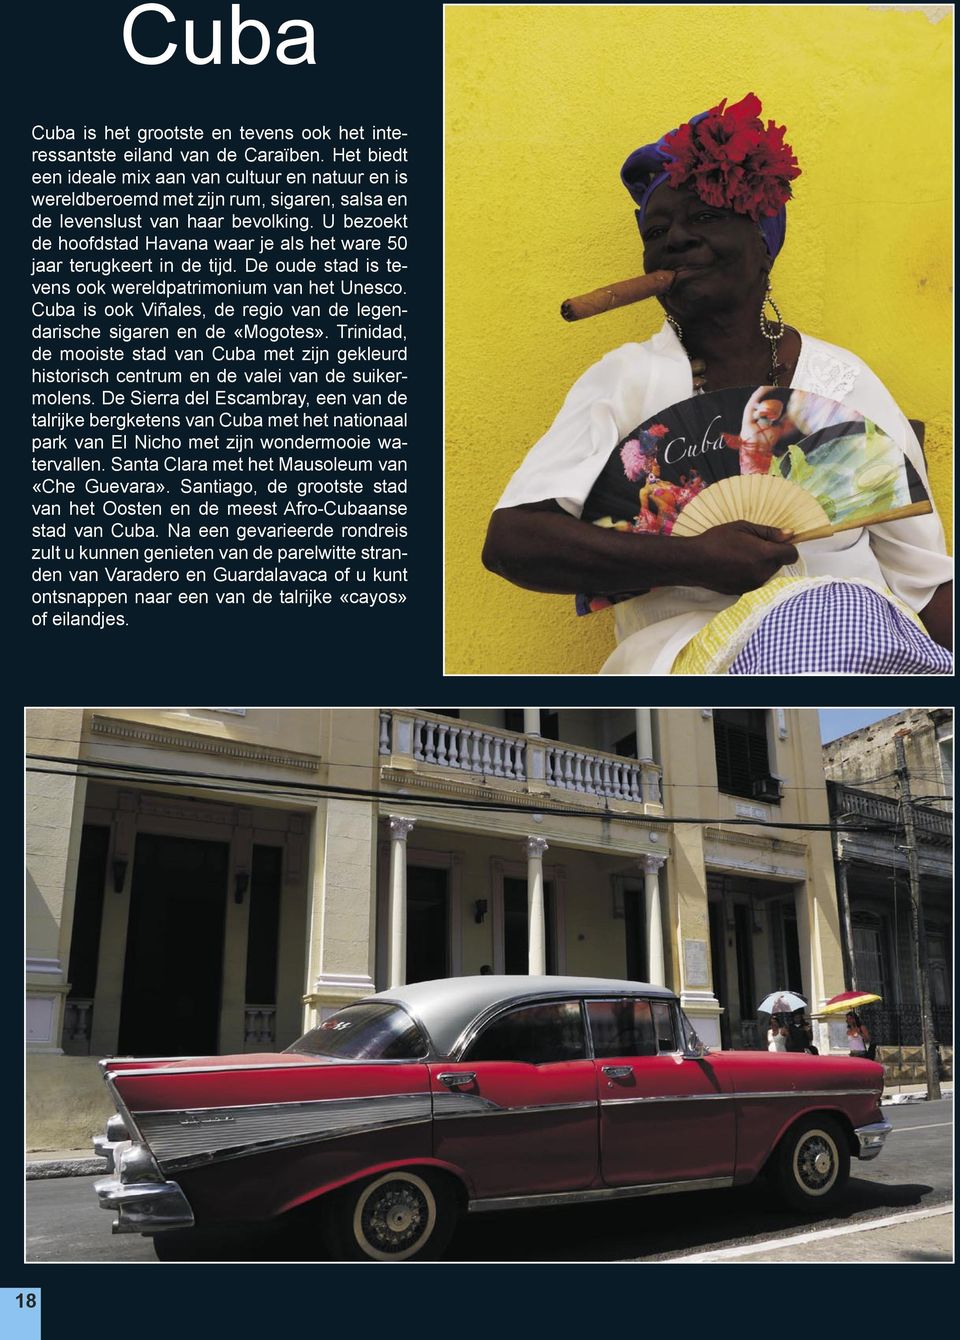 U bezoekt de hoofdstad Havana waar je als het ware 50 jaar terugkeert in de tijd. De oude stad is tevens ook wereldpatrimonium van het Unesco.